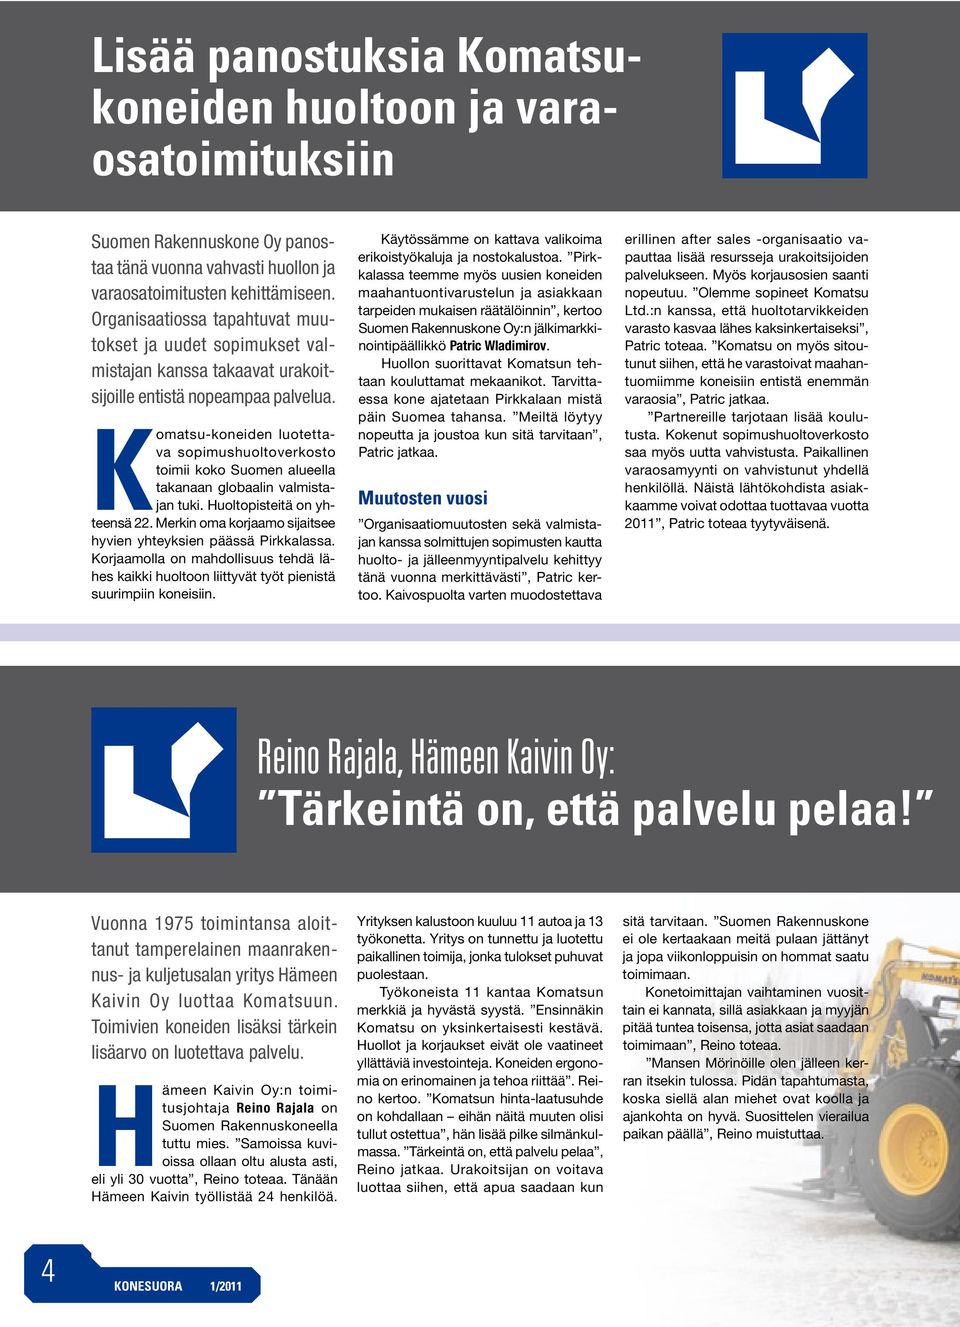 Komatsu-koneiden luotettava sopimushuoltoverkosto toimii koko Suomen alueella takanaan globaalin valmistajan tuki. Huoltopisteitä on yhteensä 22.